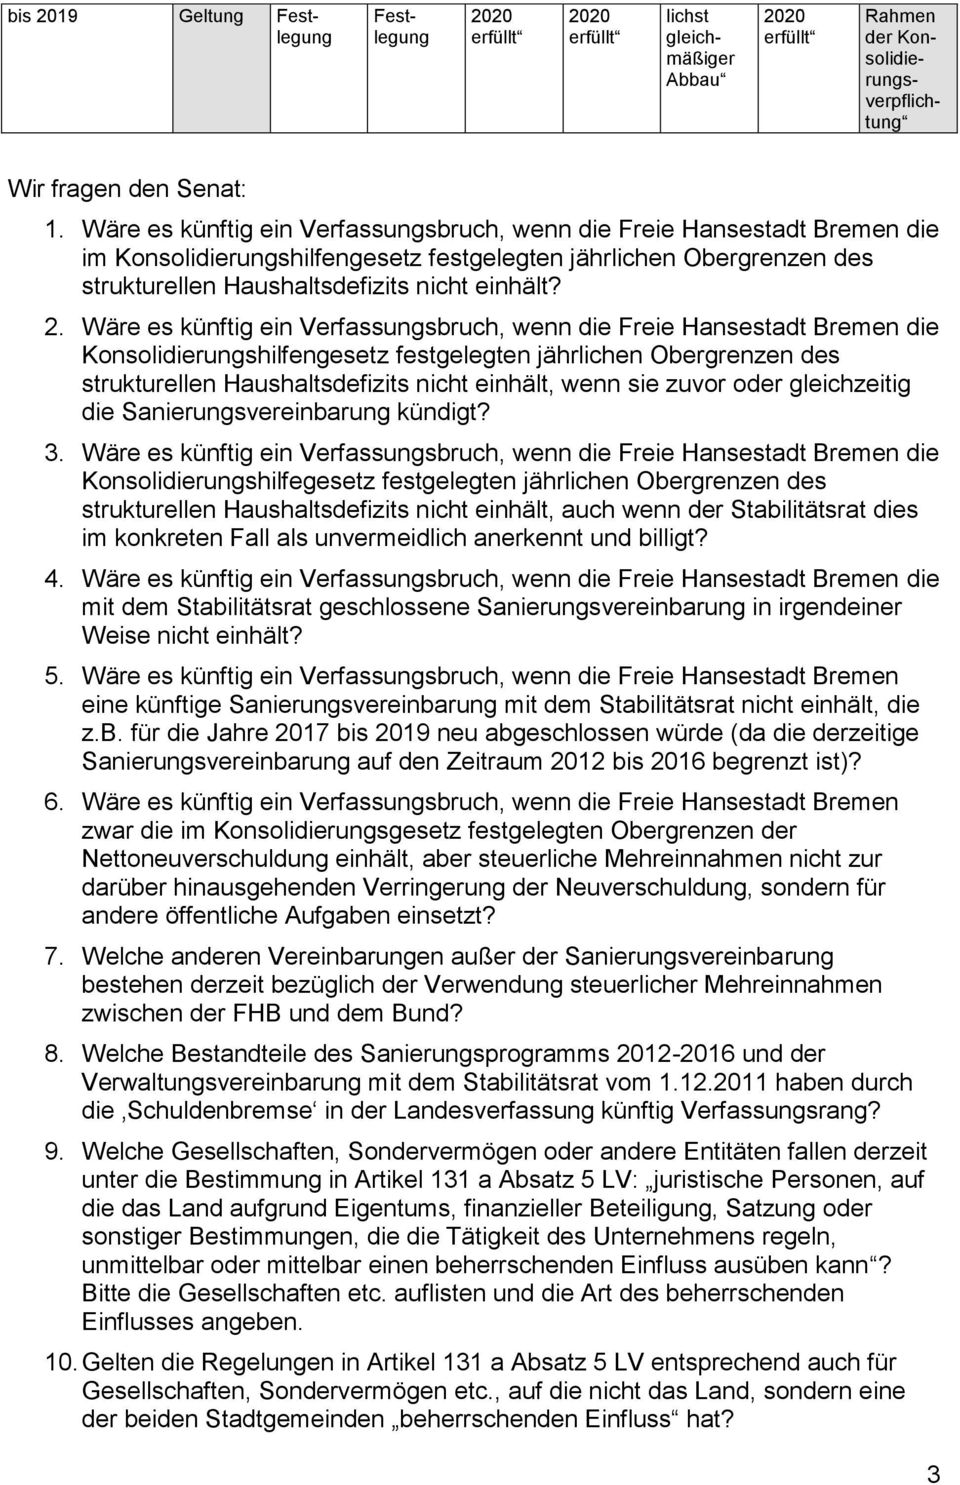 Wäre es künftig ein Verfassungsbruch, wenn die Freie Hansestadt Bremen die Konsolidierungshilfengesetz festgelegten jährlichen Obergrenzen des strukturellen Haushaltsdefizits nicht einhält, wenn sie